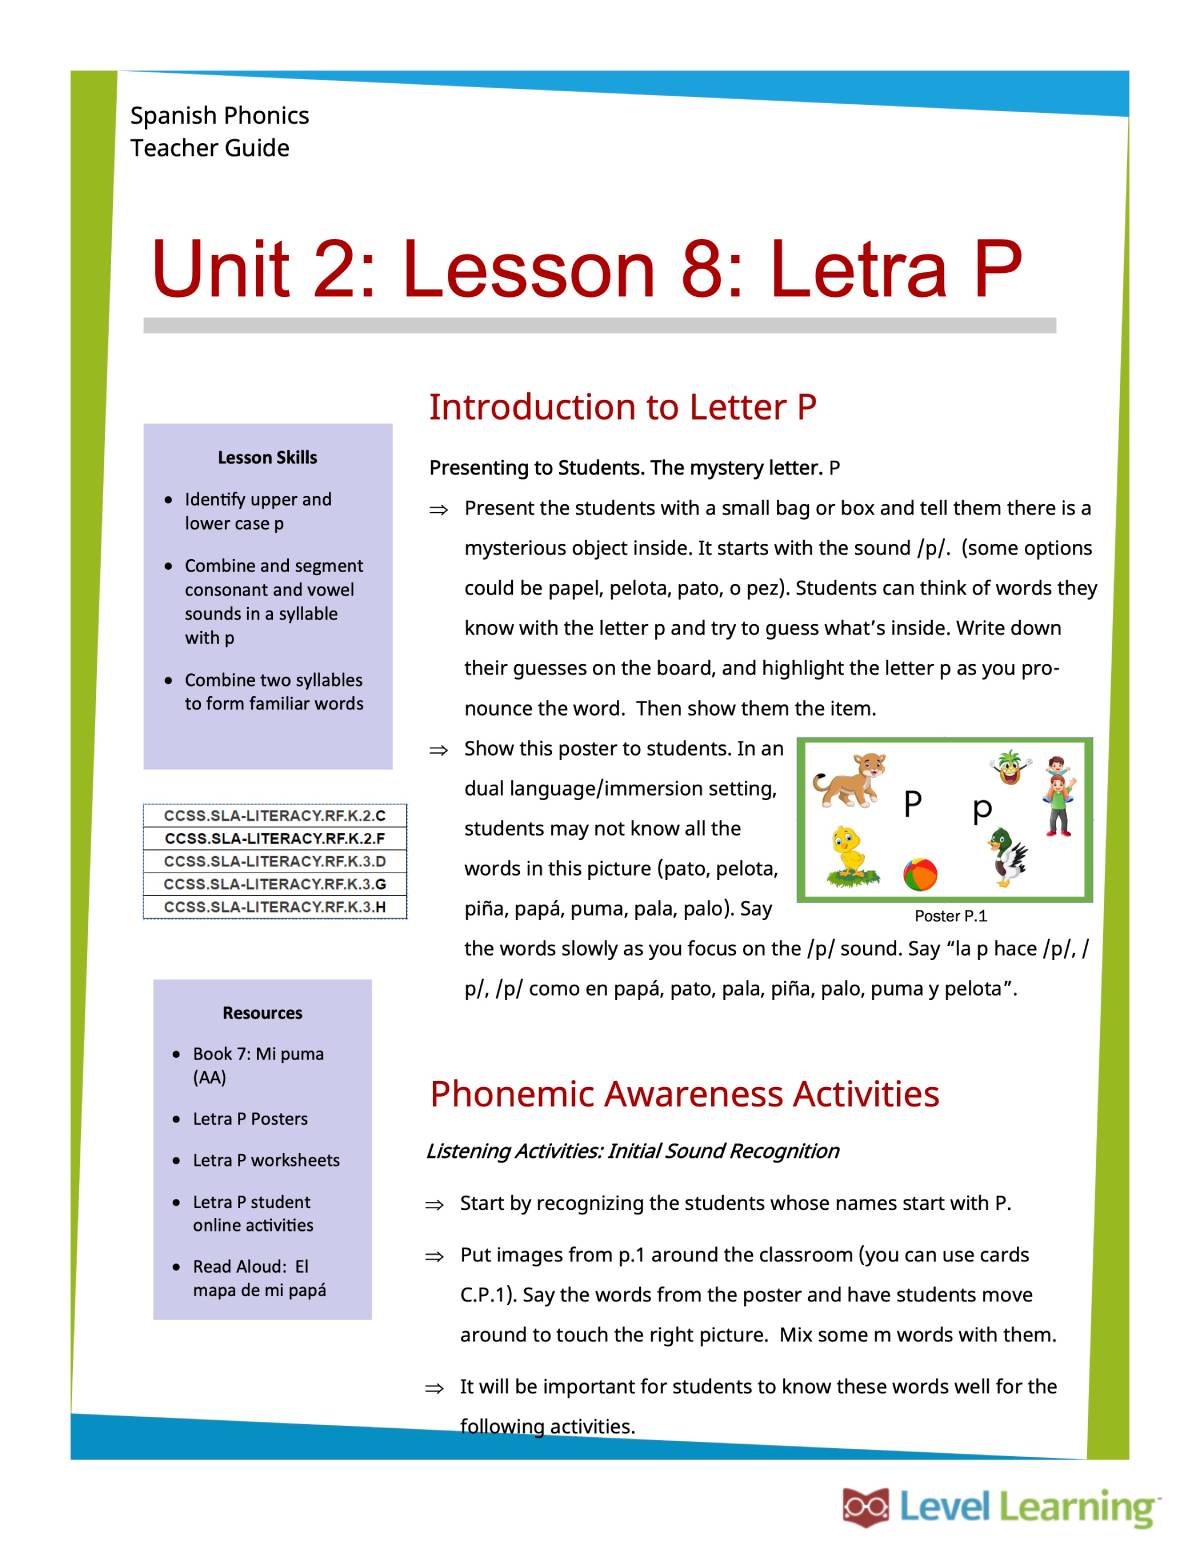 Unit 2 Letra P introduction